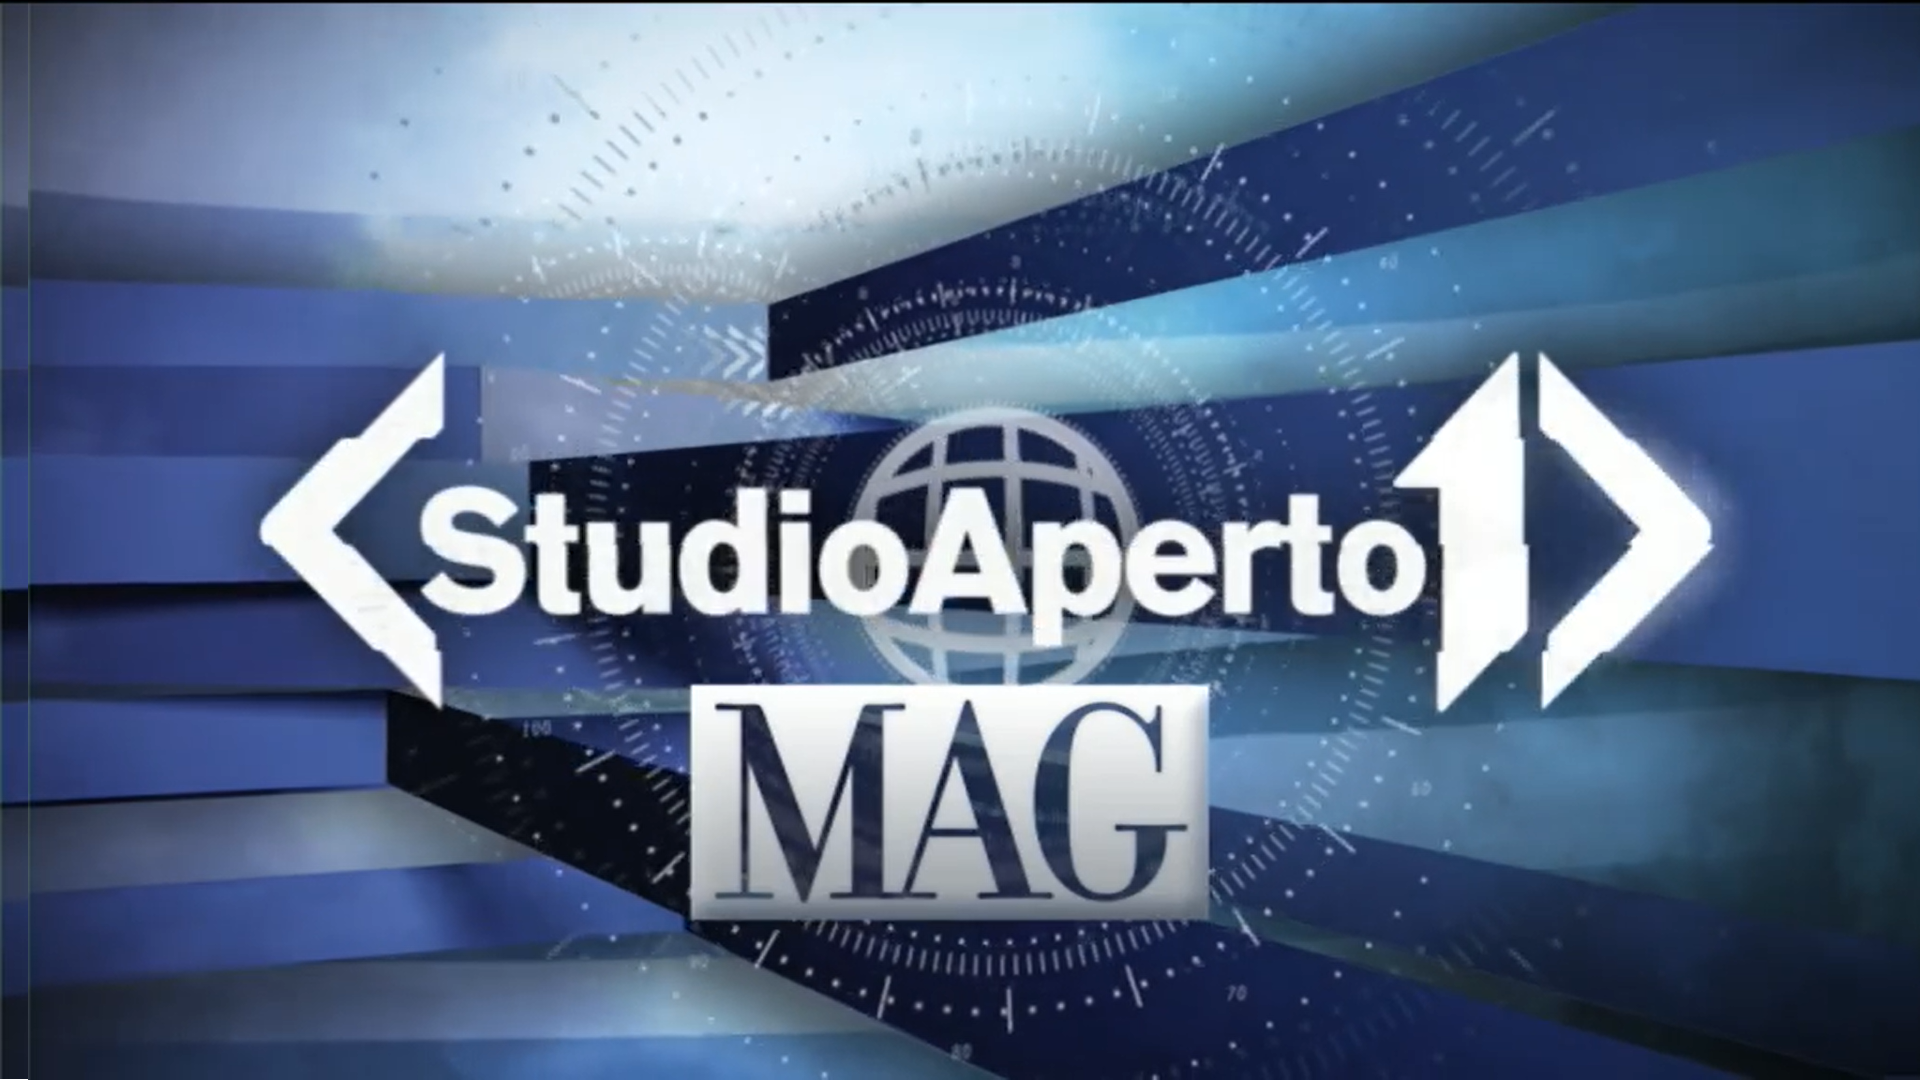 TV, Italia1, Studio Aperto MAG, Mediaset.